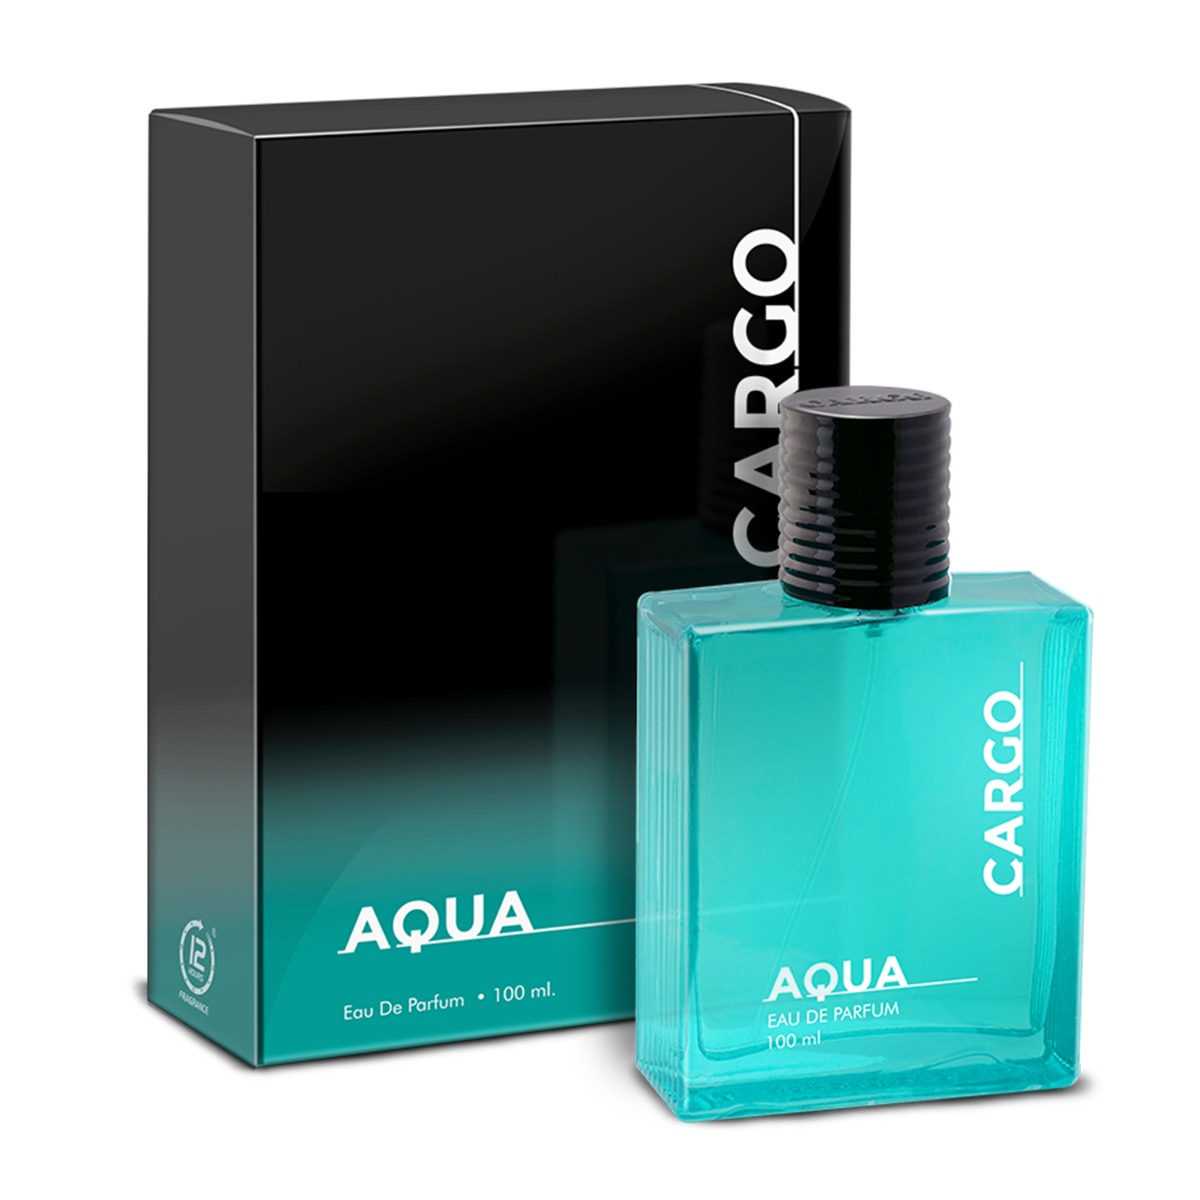 CFS Cargo Aqua Long Lasting Eau De Parfum, 100ml